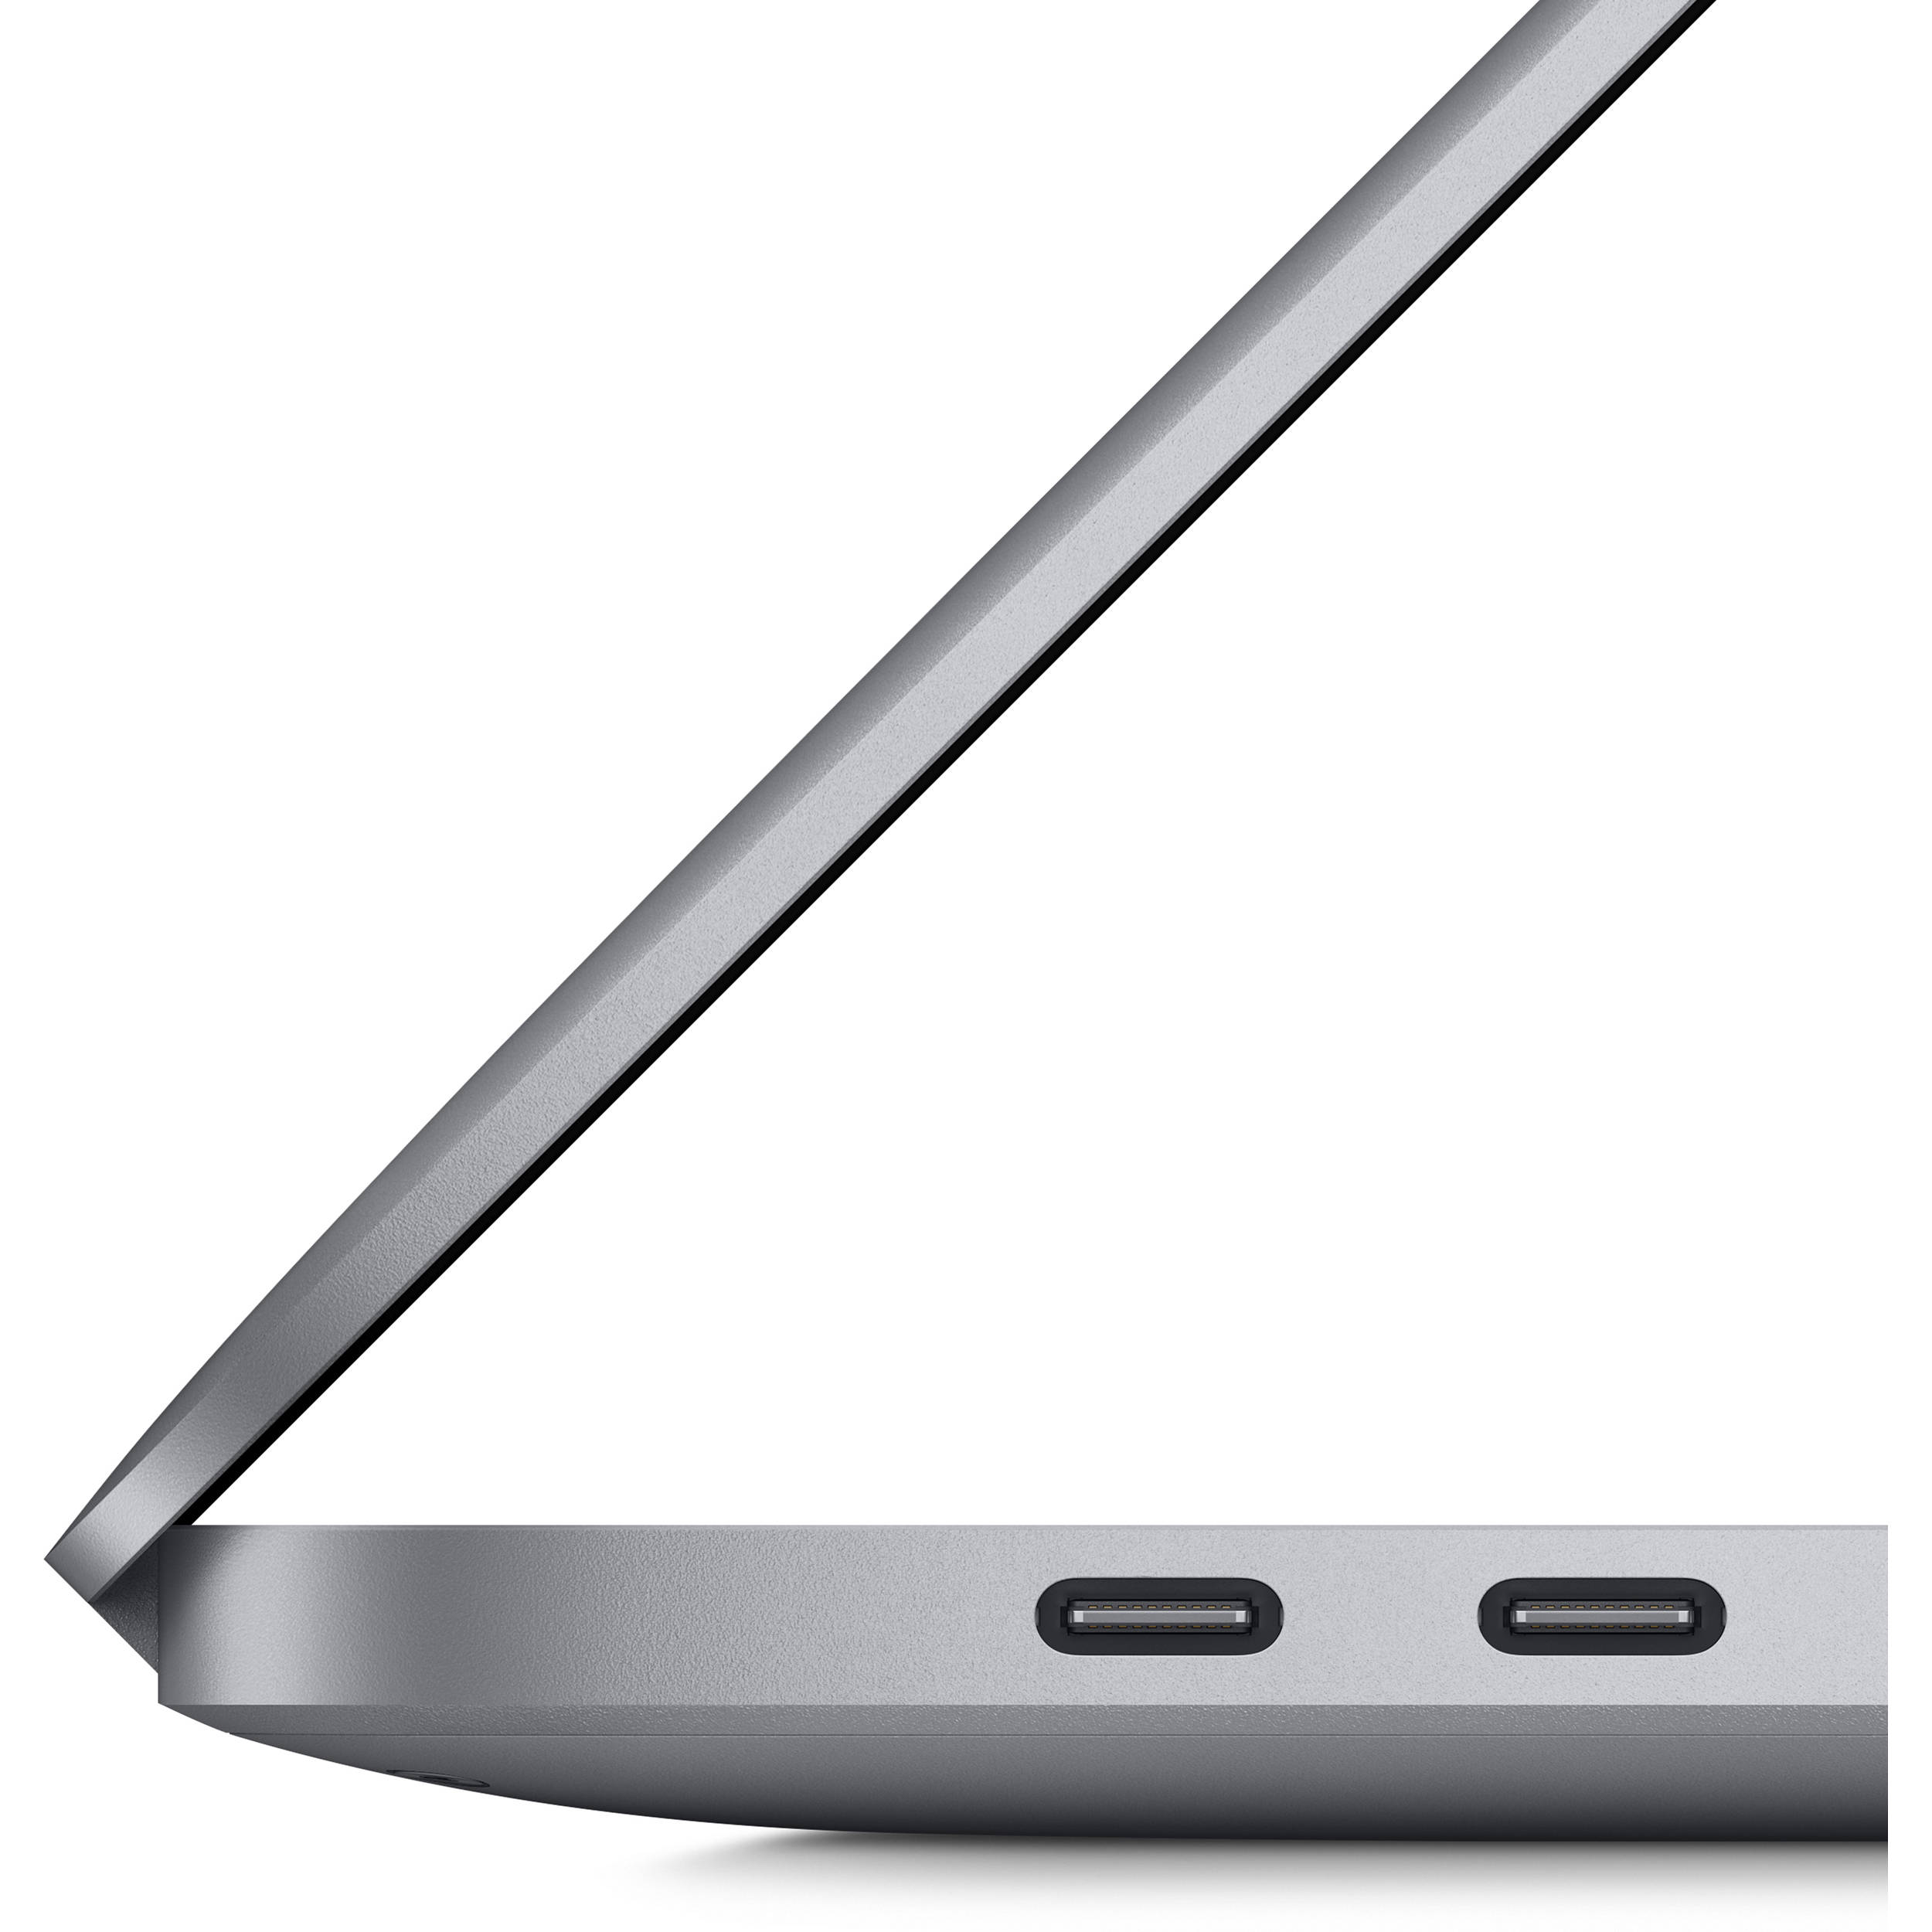 لپ تاپ 16 اینچی اپل مدل MacBook Pro MVVN2